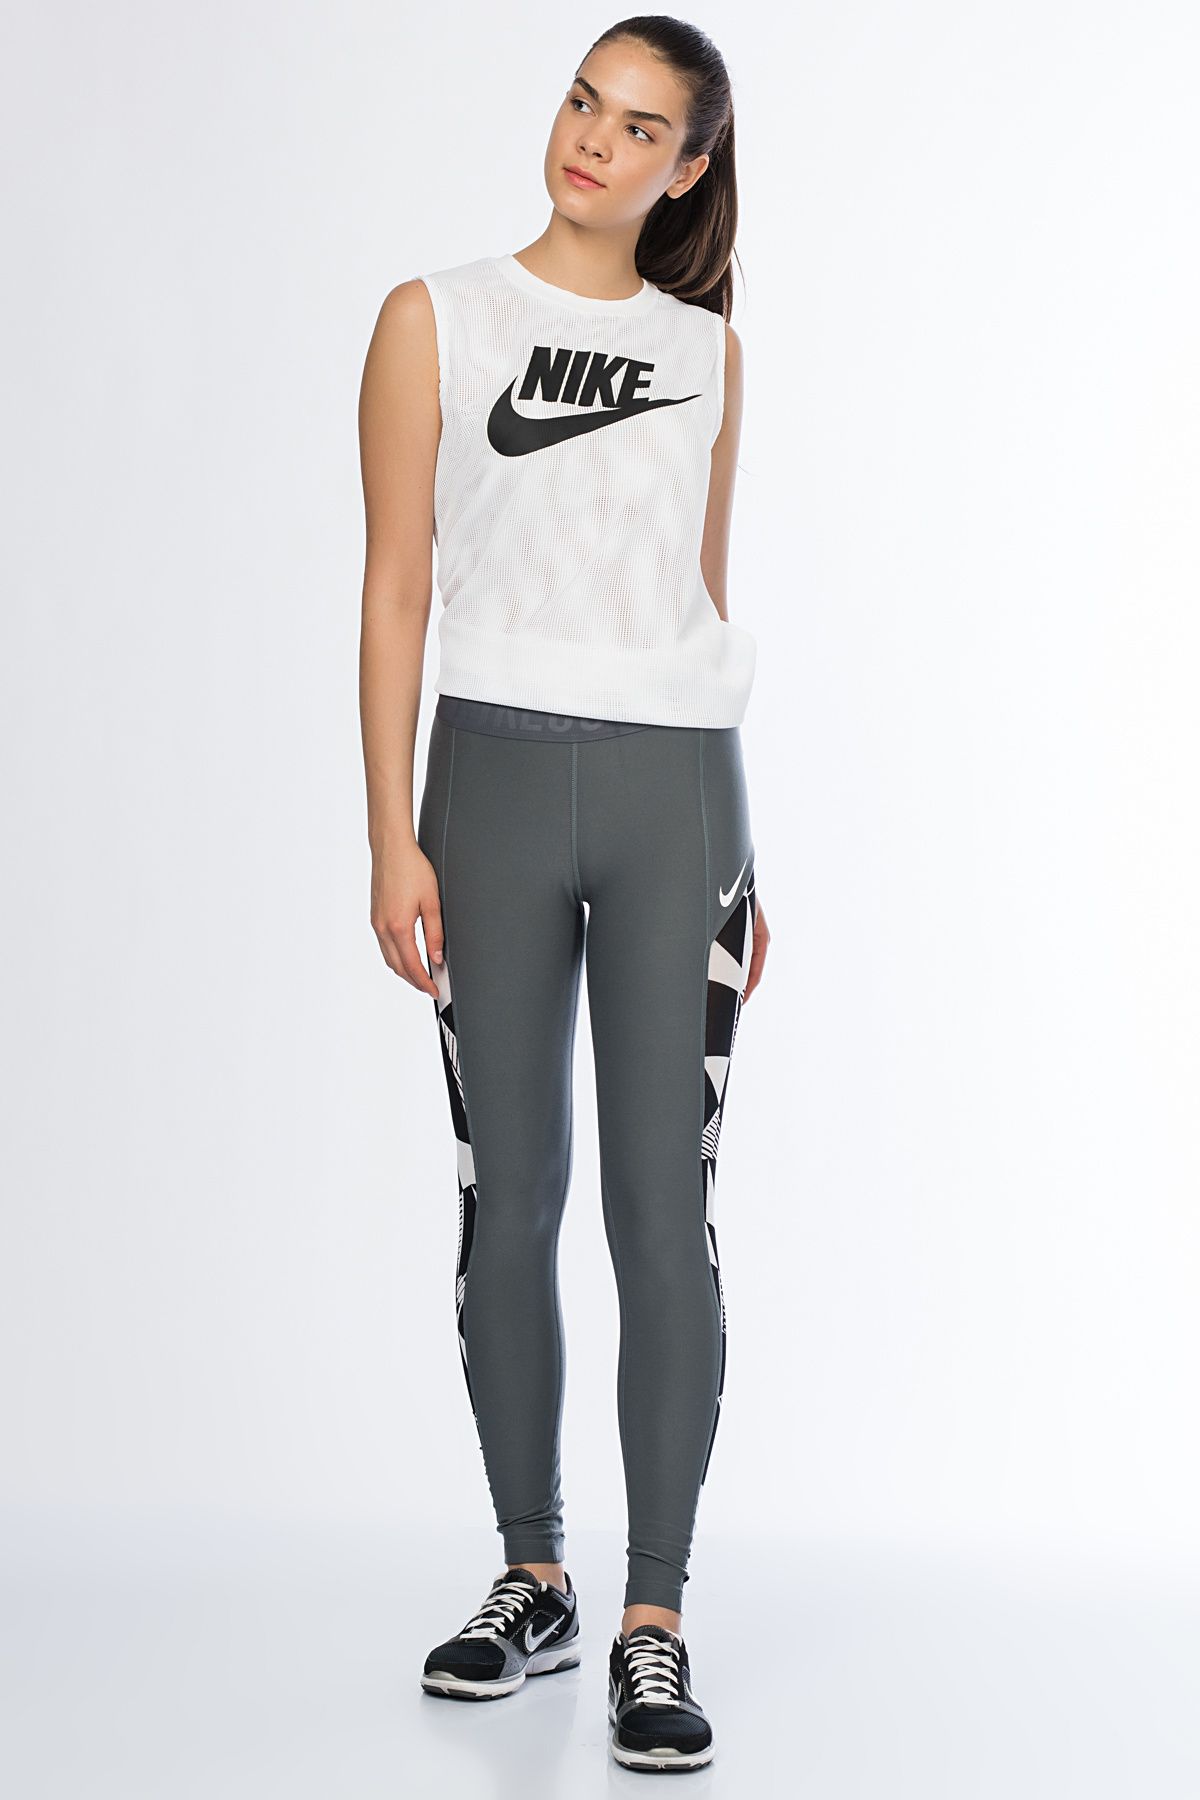 Nike Kadın Tayt - W Nkct Tght Baselıne - 837224-022